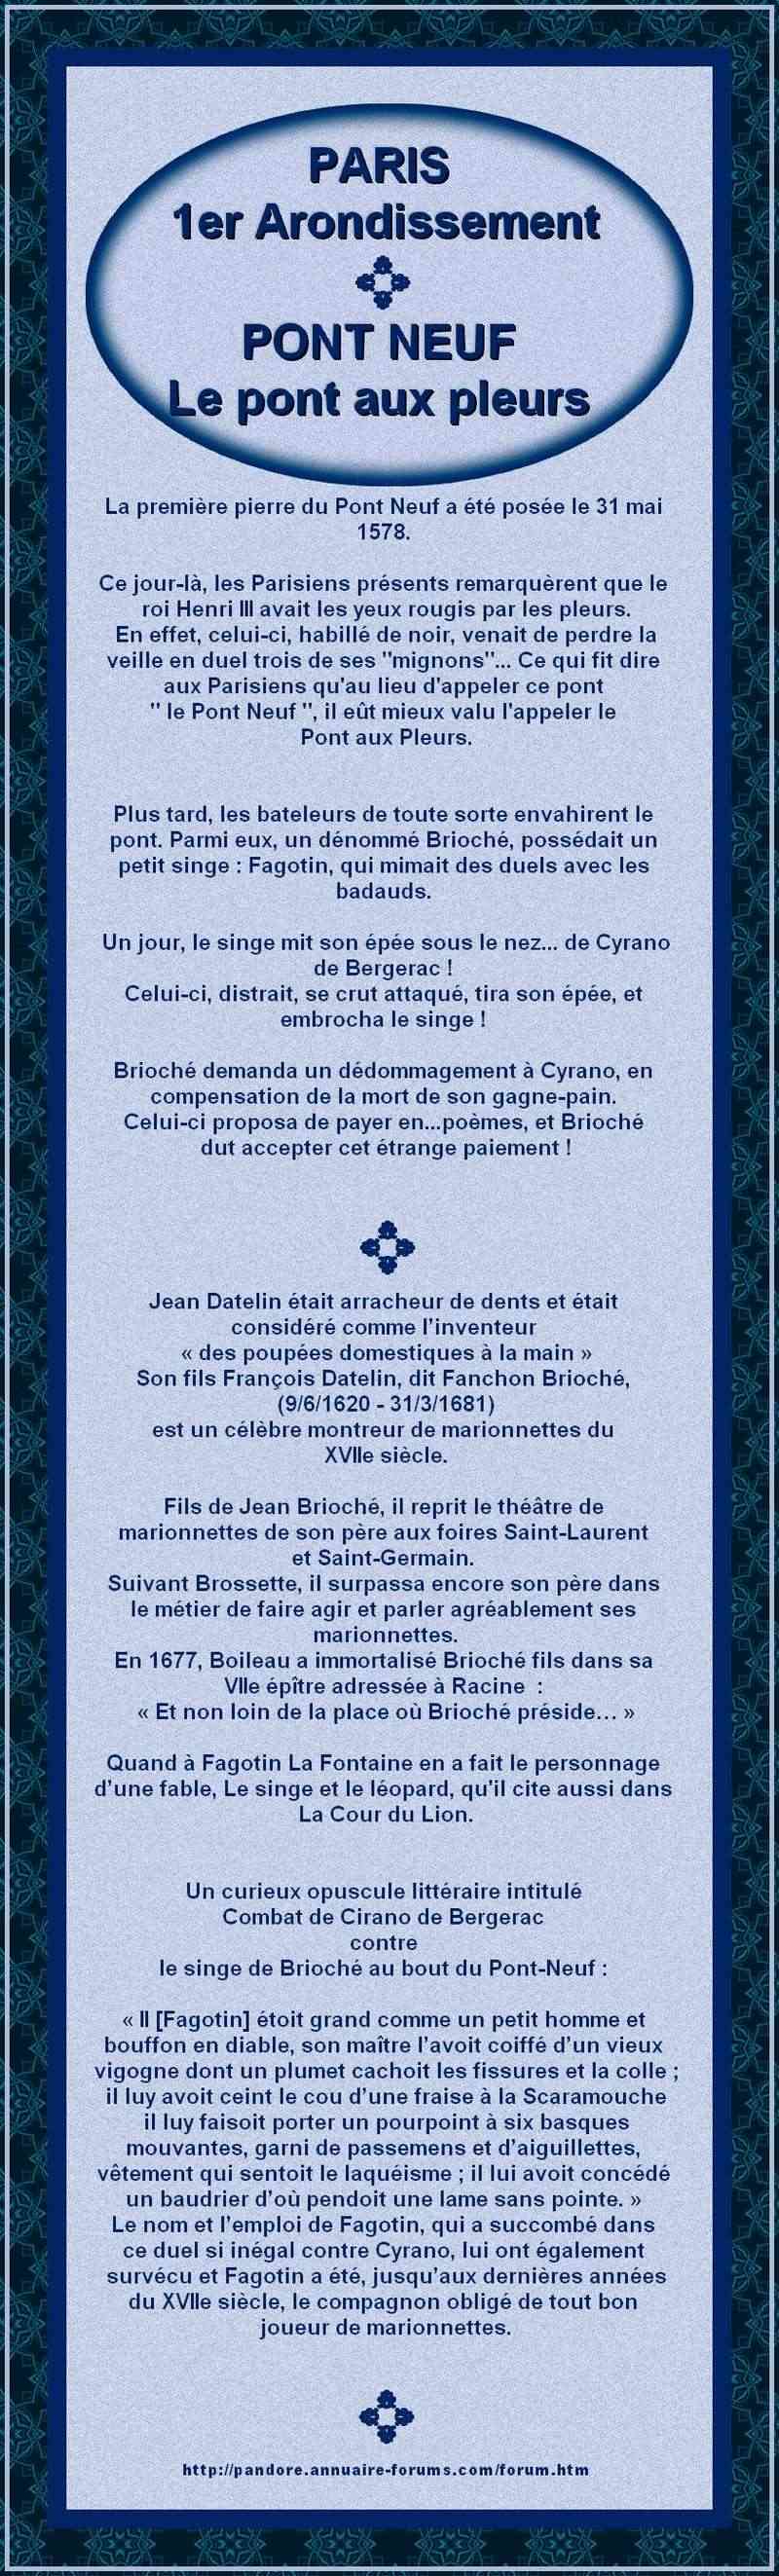 FRANCE PARIS - PONT NEUF LE SINGE FAGOTIN EMBROCHE PAR CYRANO 1476